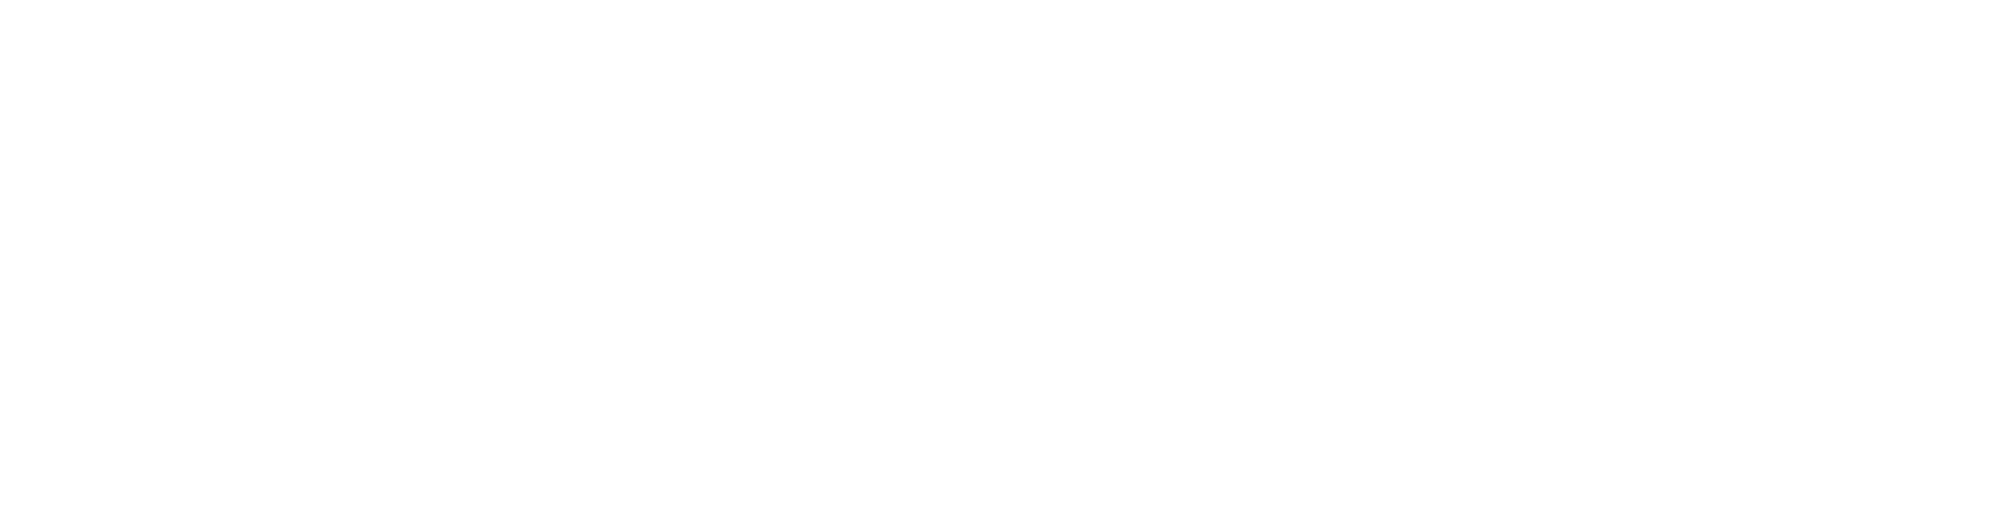 Broddelen - Logopediepraktijk Snakenborg